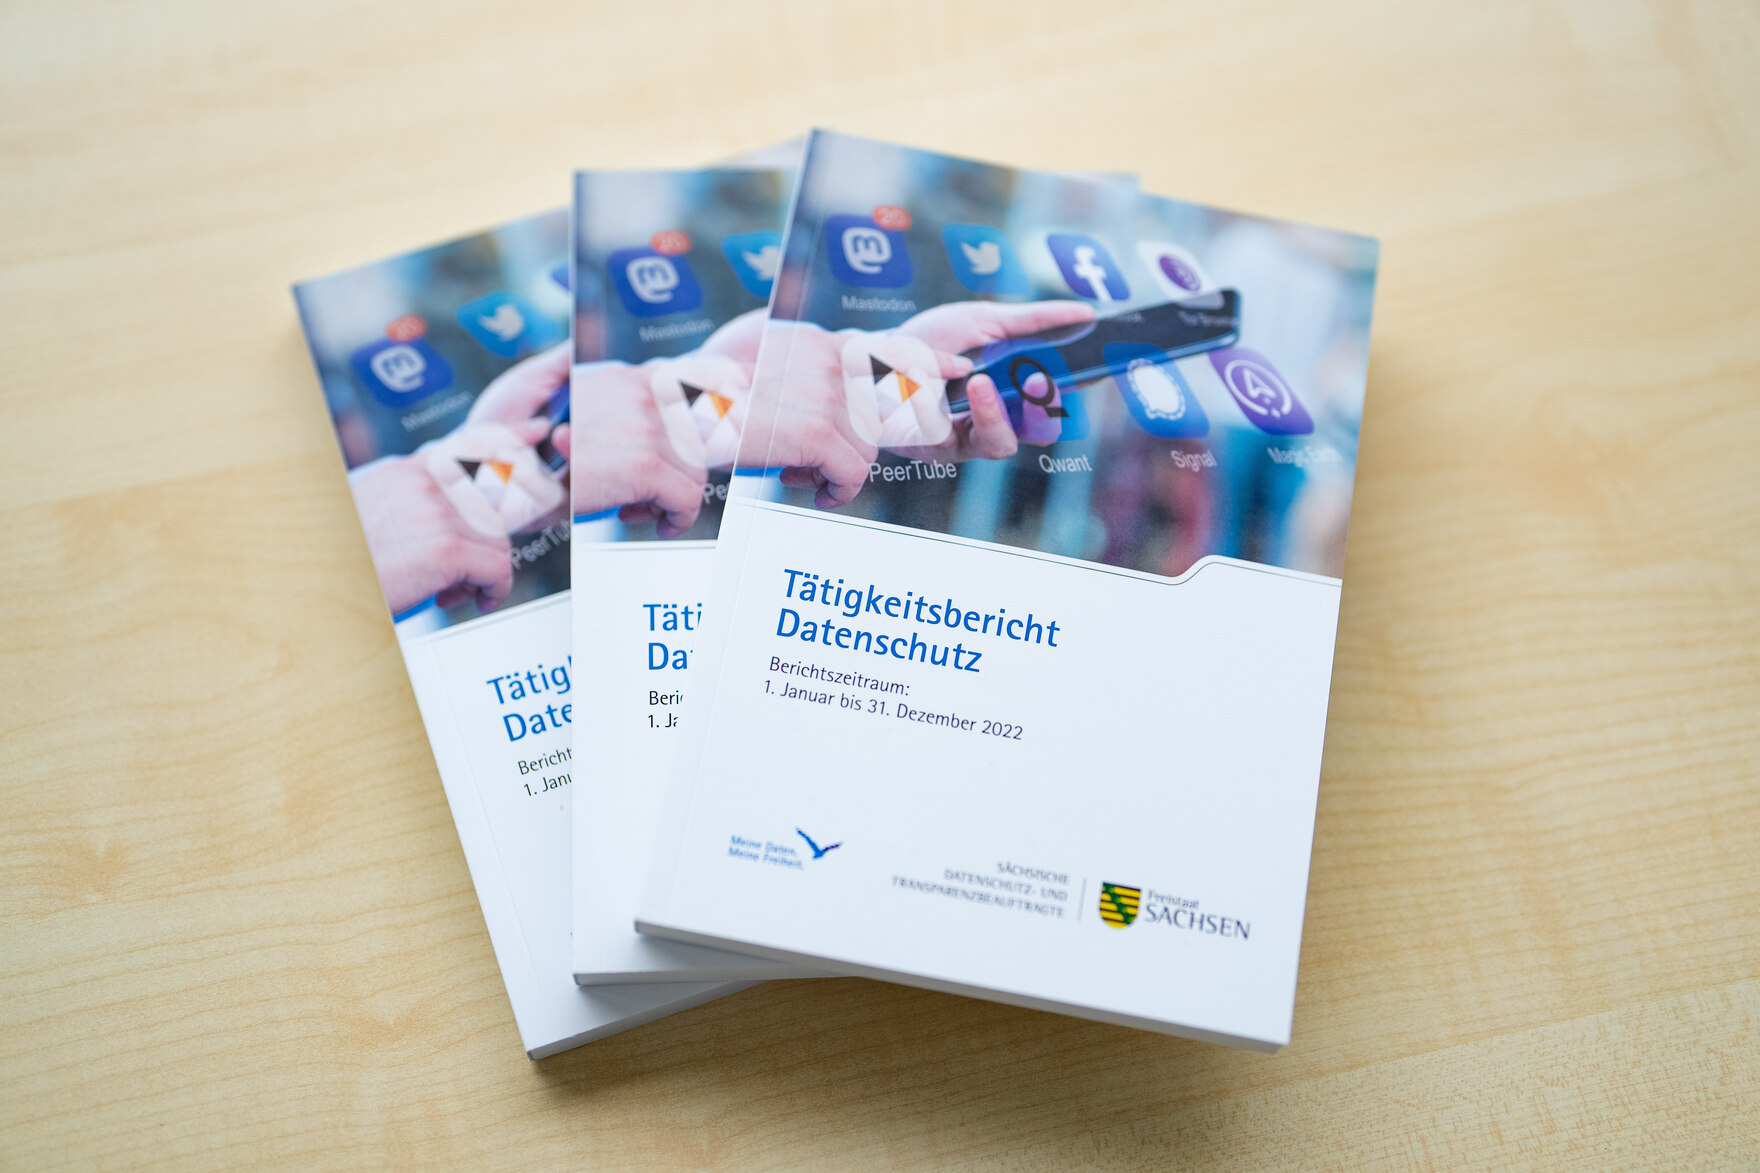 Drei Tätigkeitsberichte der Sächsischen Datenschutz- Transparenzbeauftragten liegen auf einem hellen Holztisch.